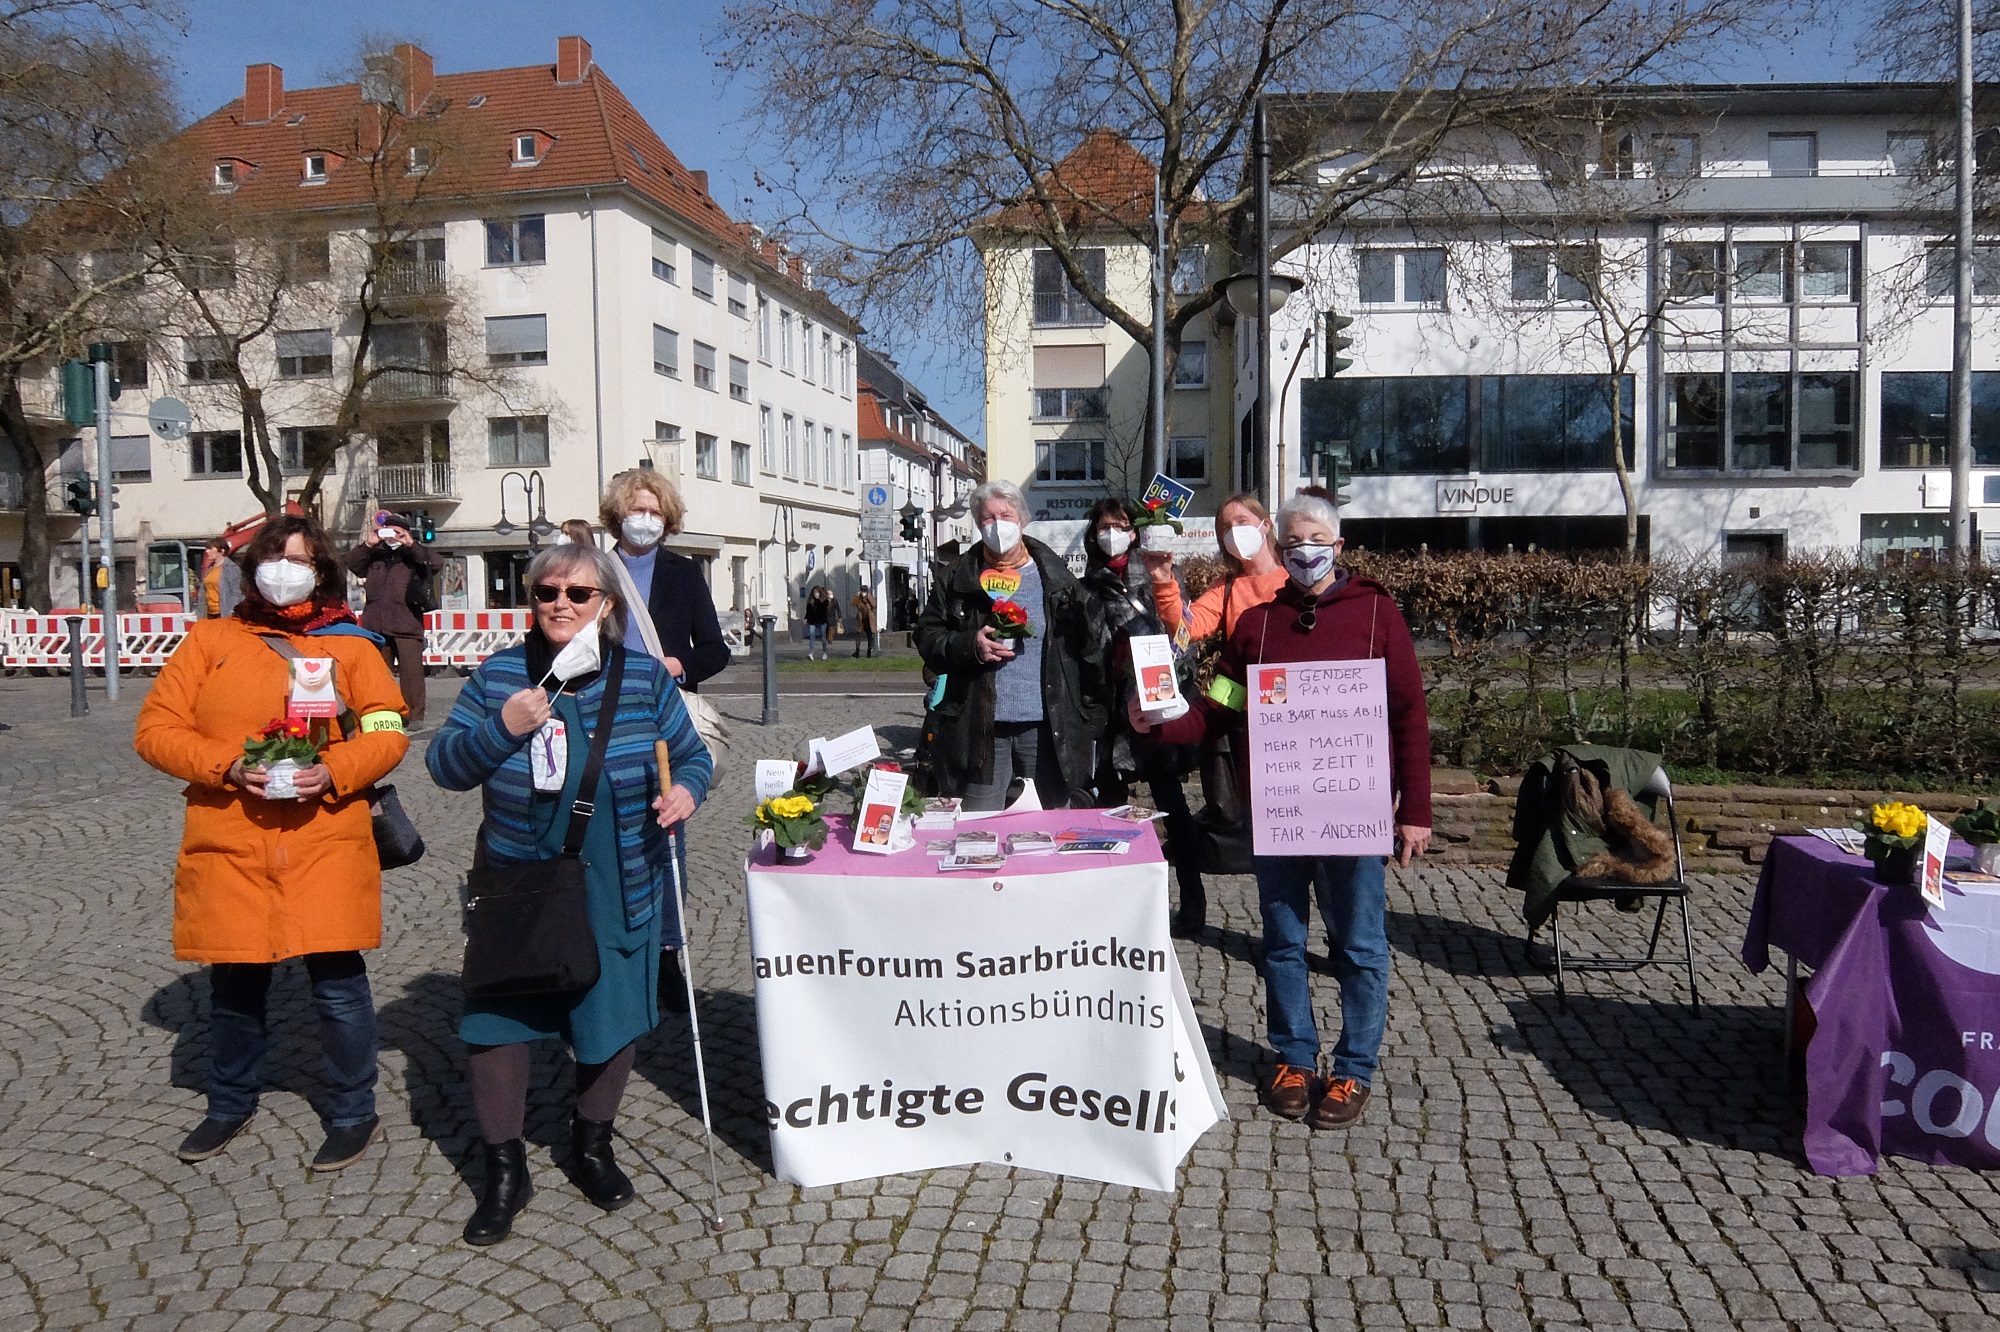 FrauenForum Saarbrücken: Aktionen und Informationen zum Internationalen Frauentag 2022